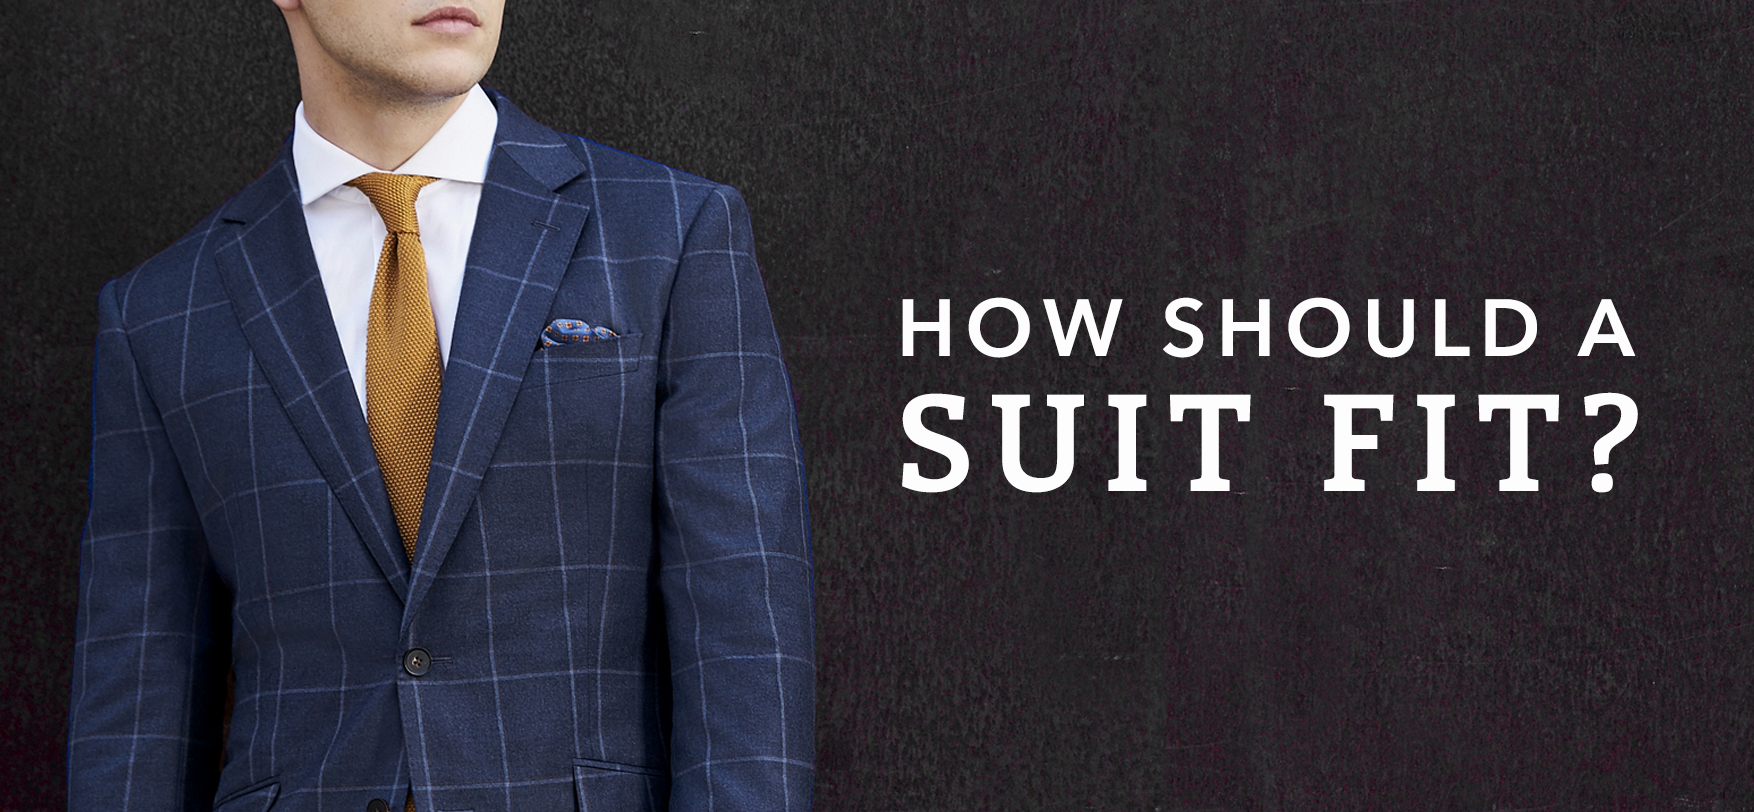 How Should a Suit Fit